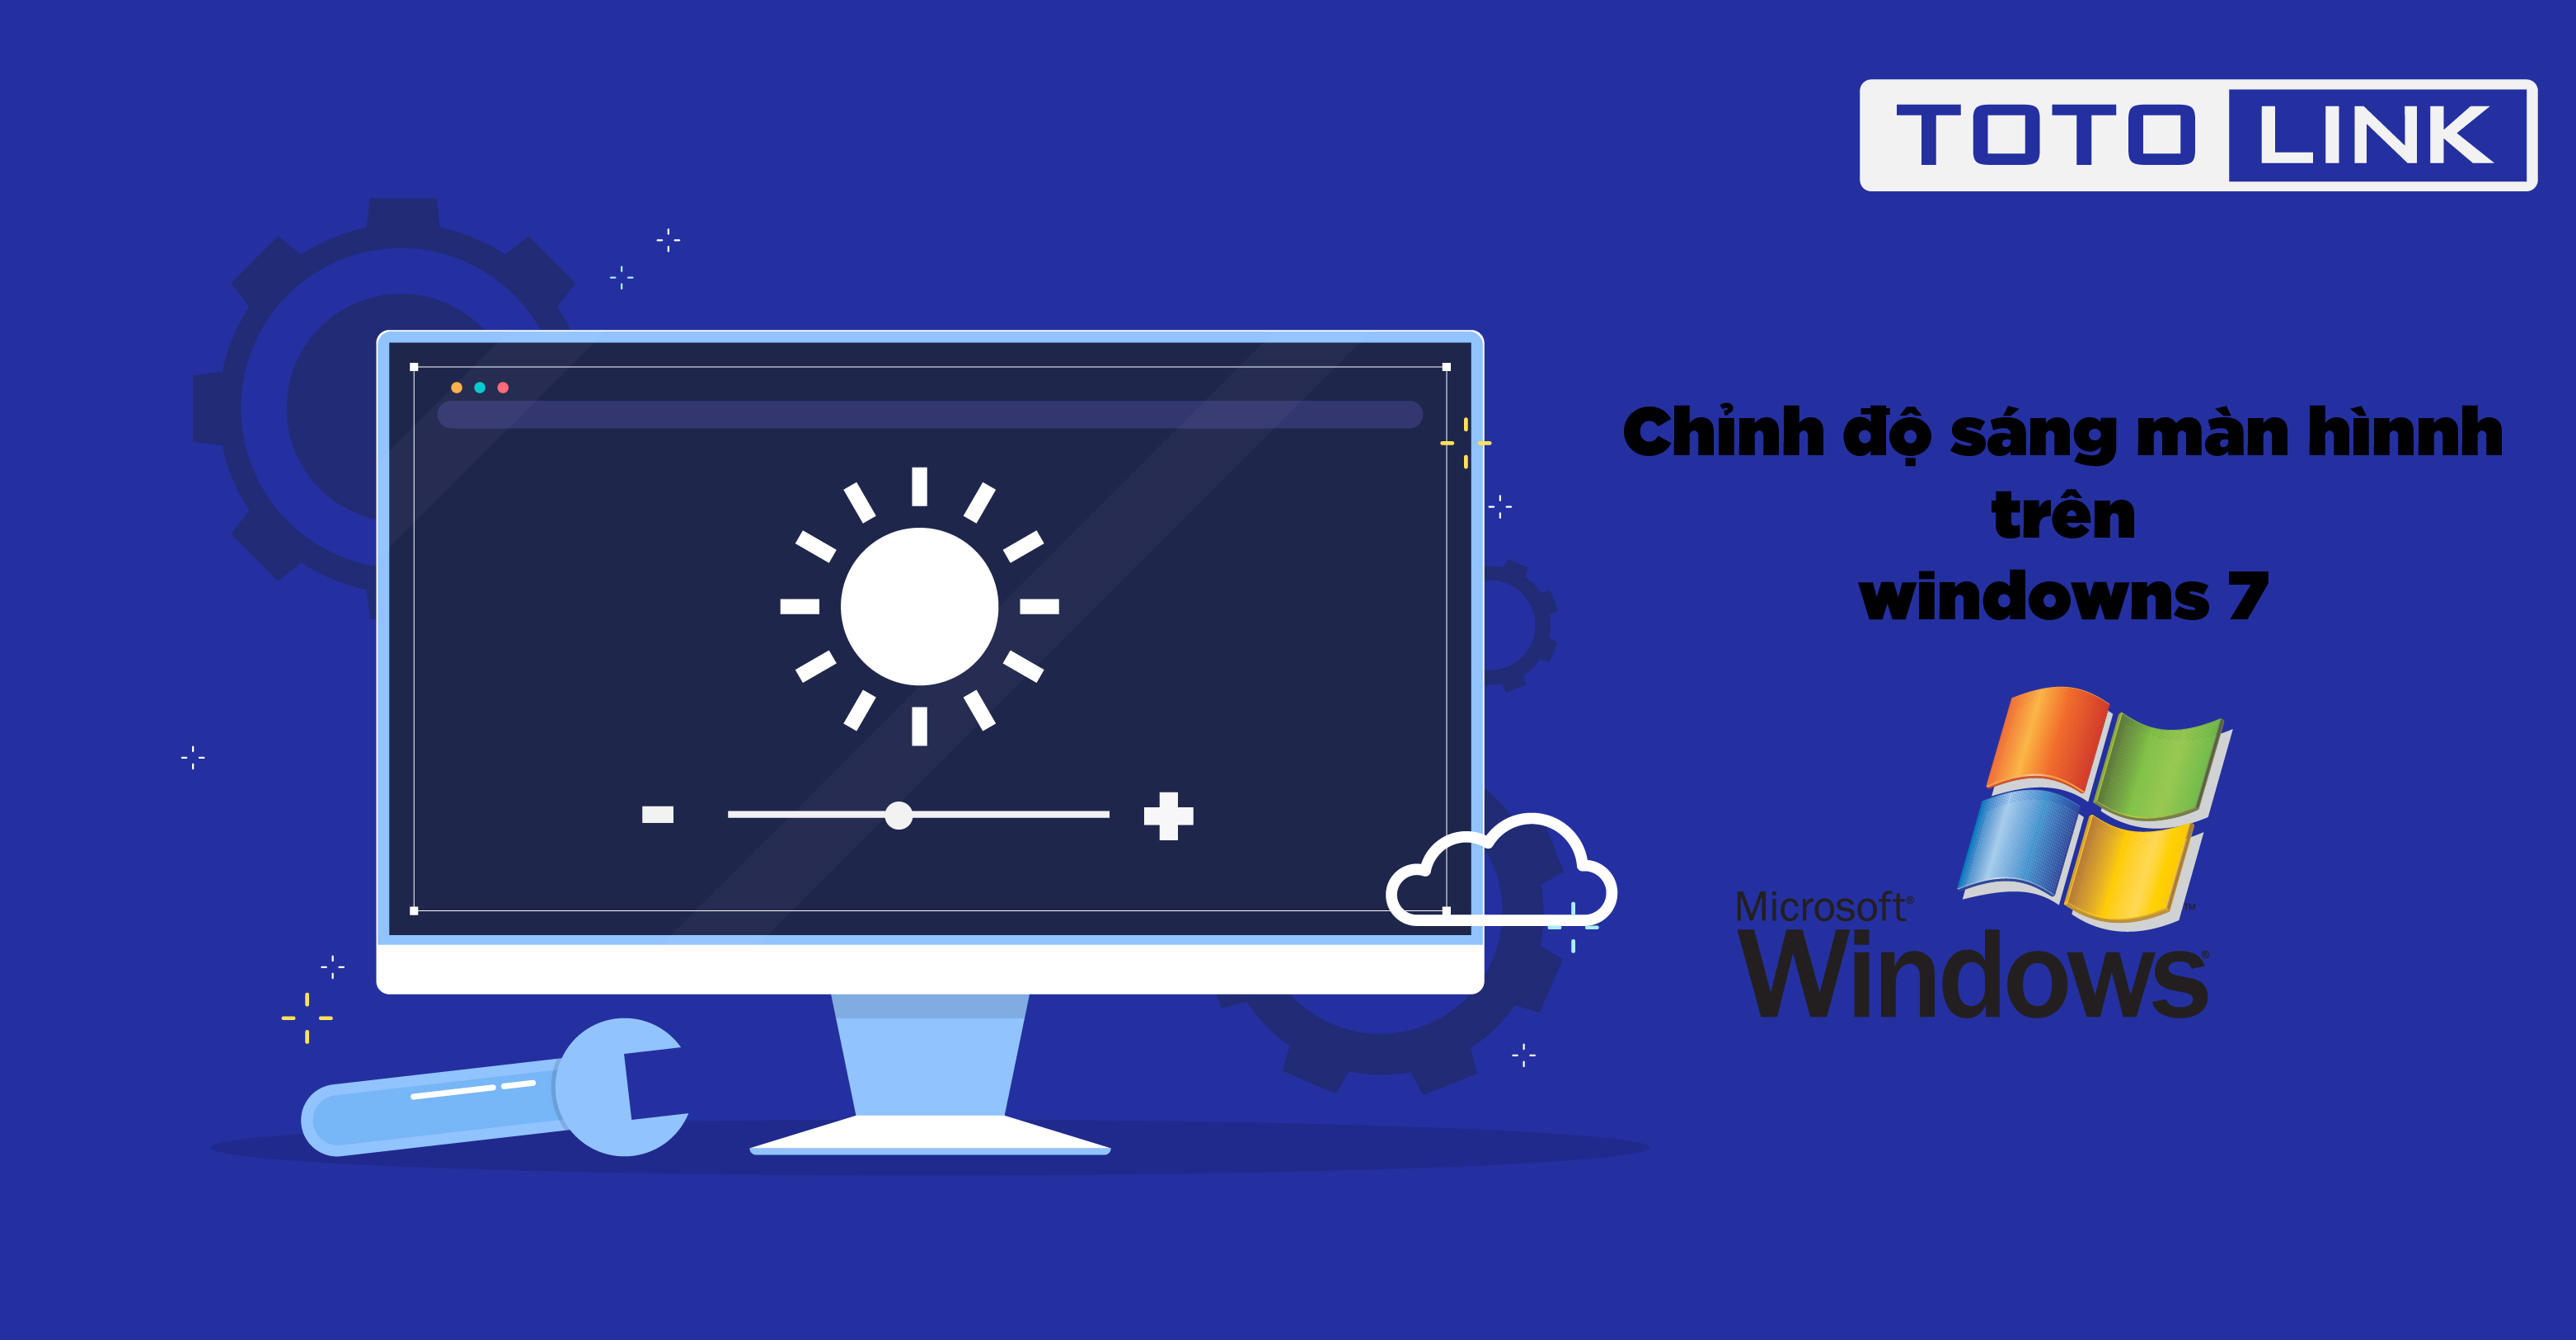 Cách chỉnh độ sáng màn hình Win 7 cho máy tính, laptop